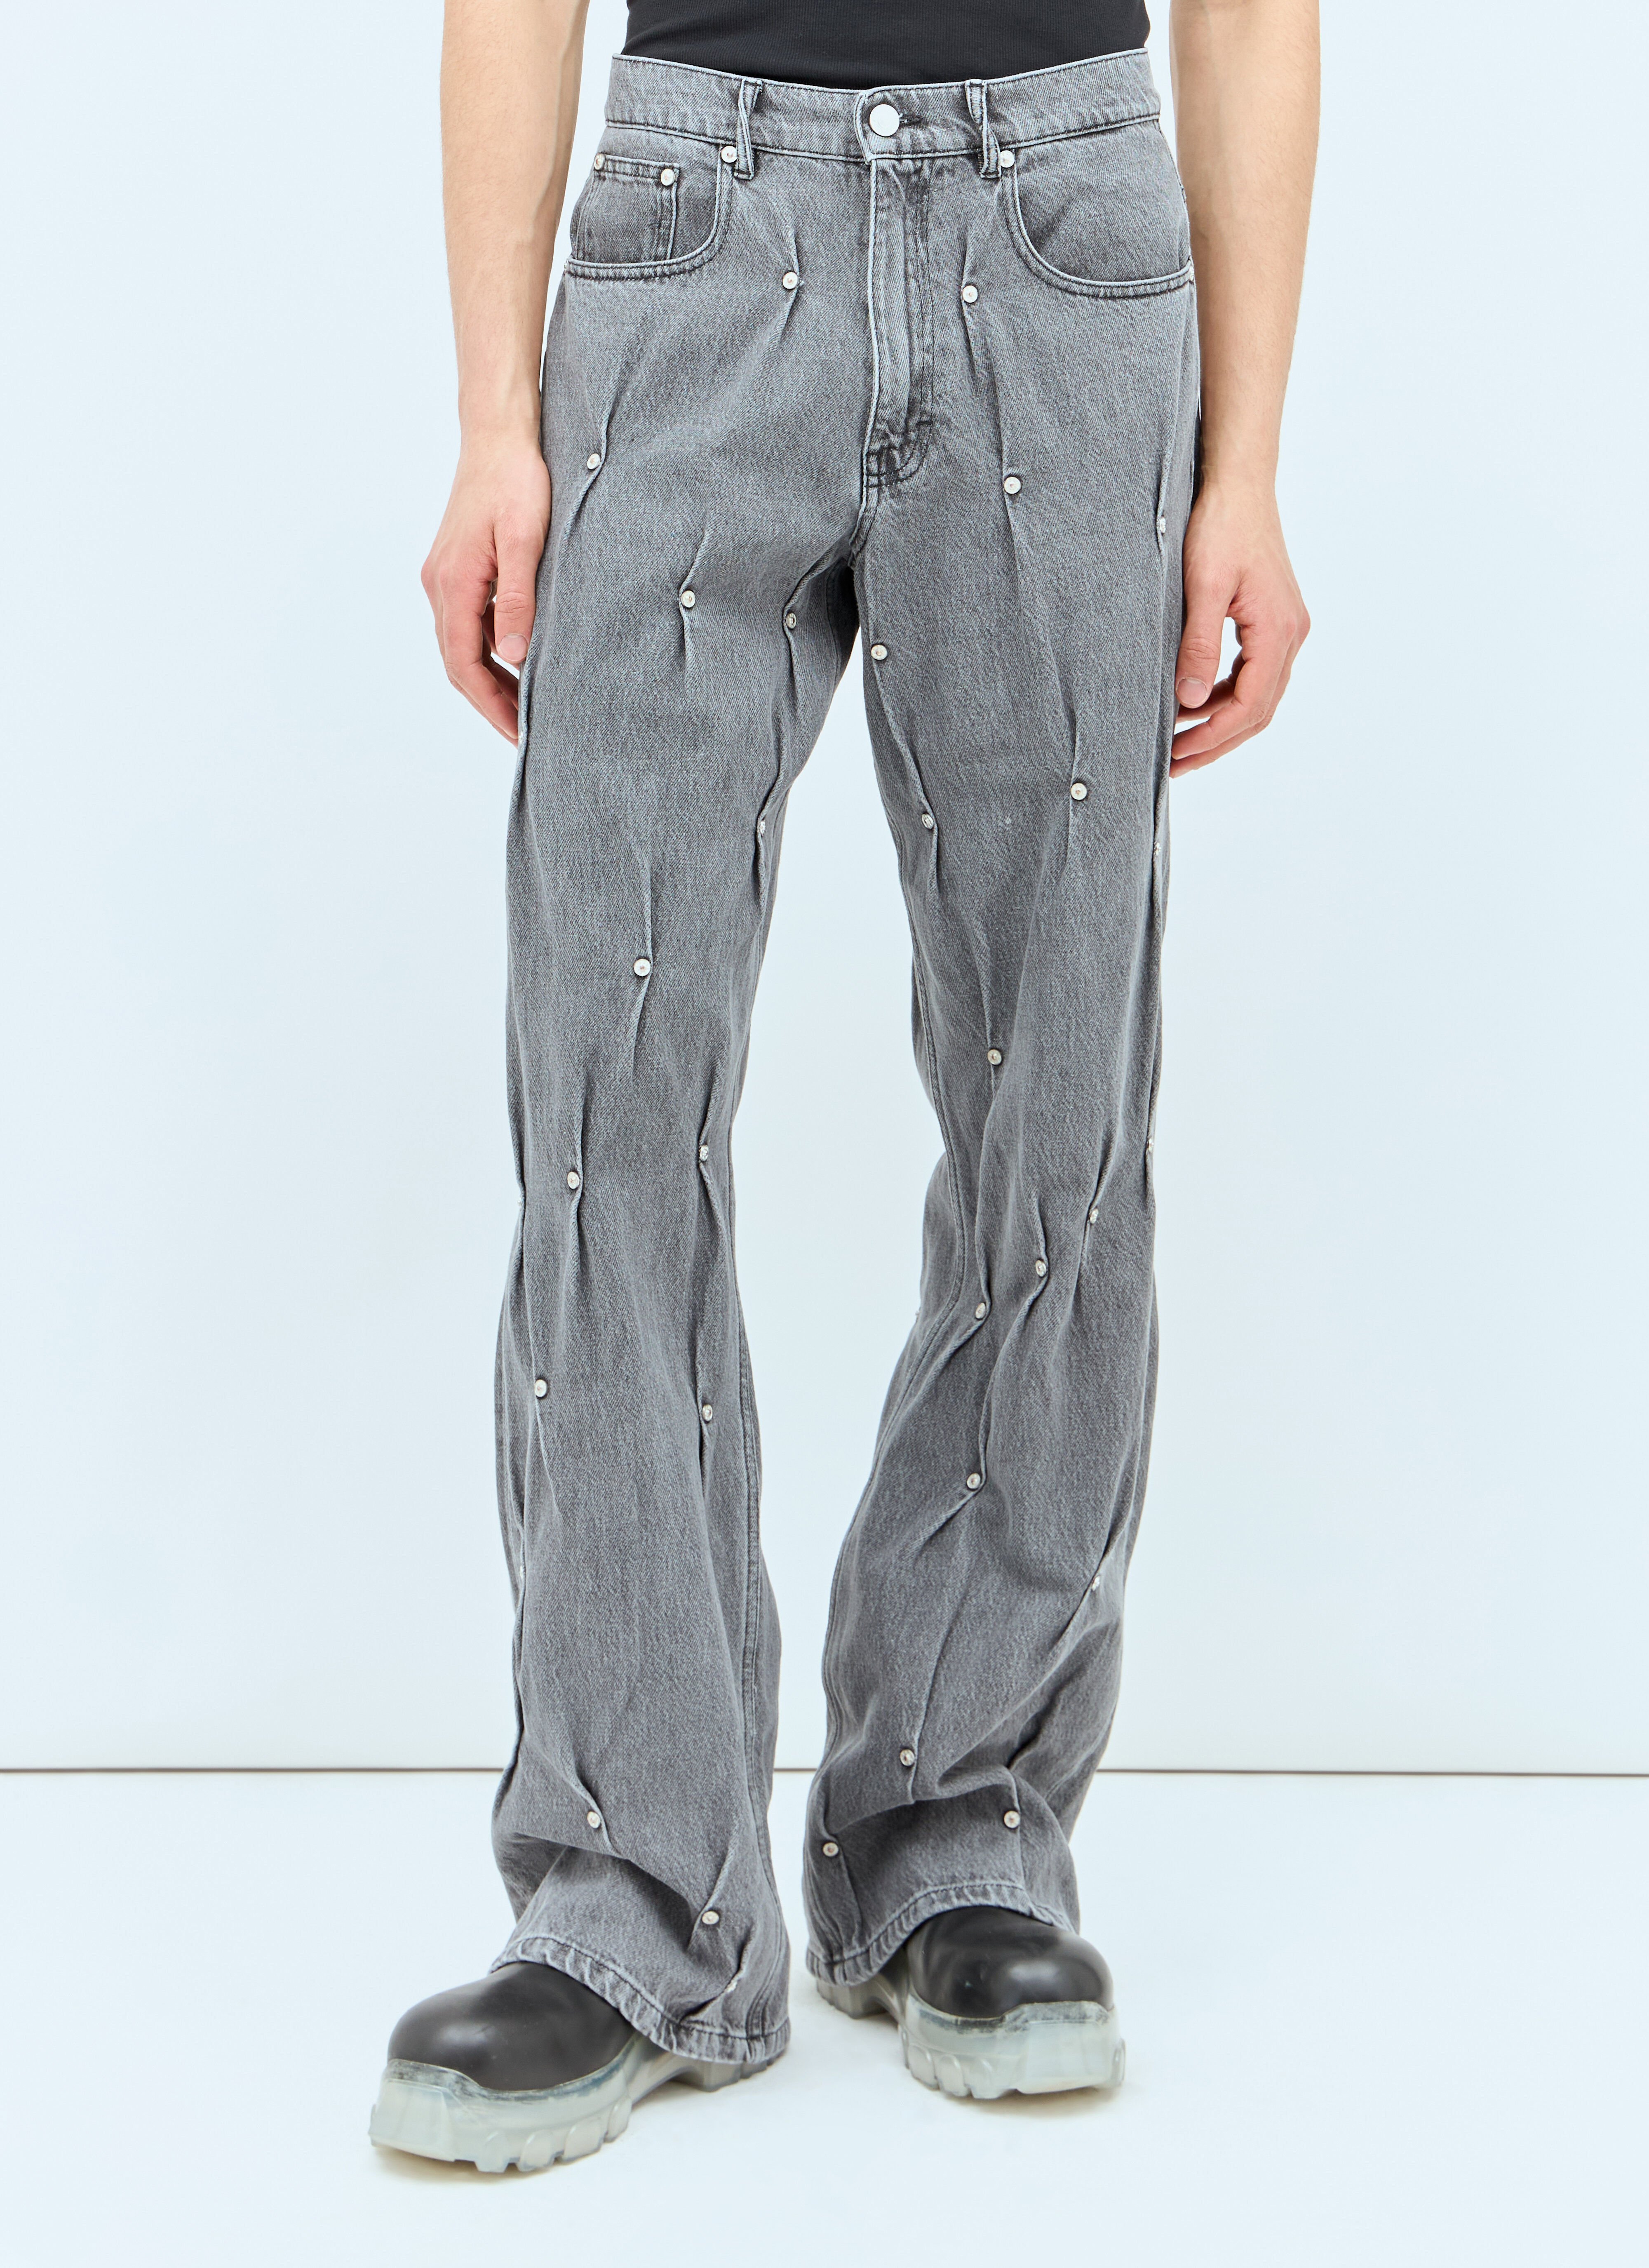 Kusikohc Multi Rivet Jeans Grey kus0156005